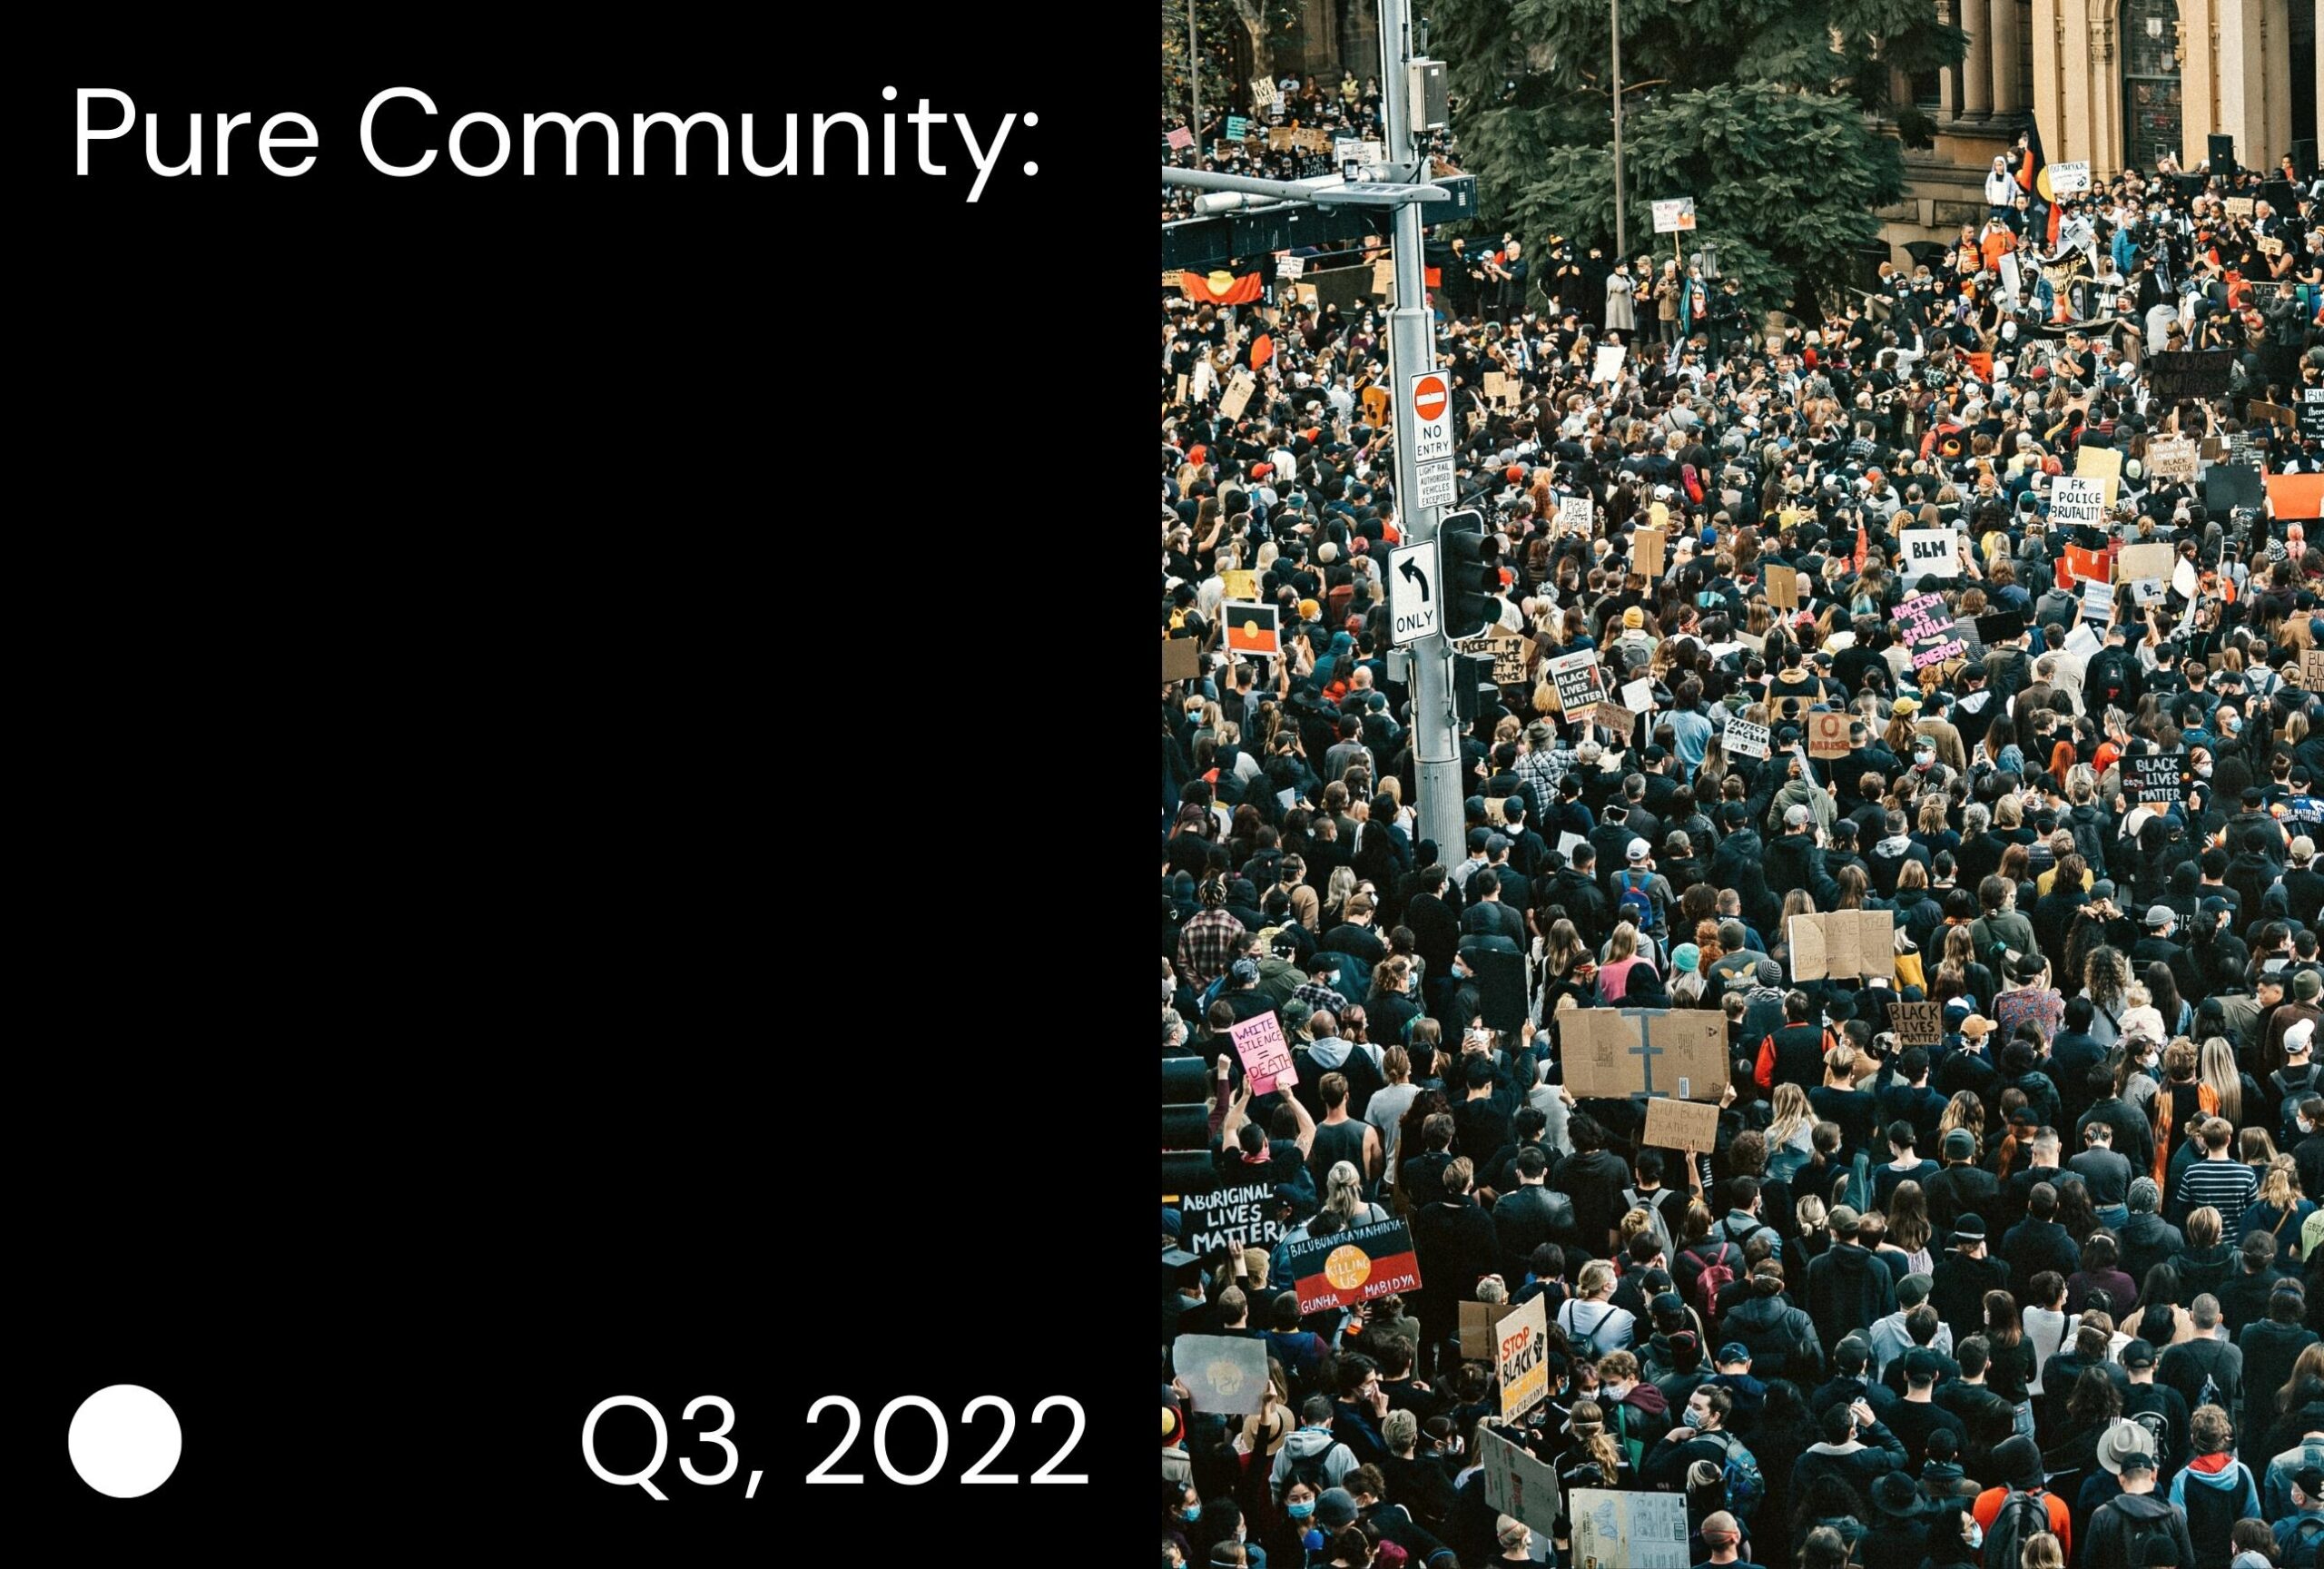 Pure Community / Q3, 2022